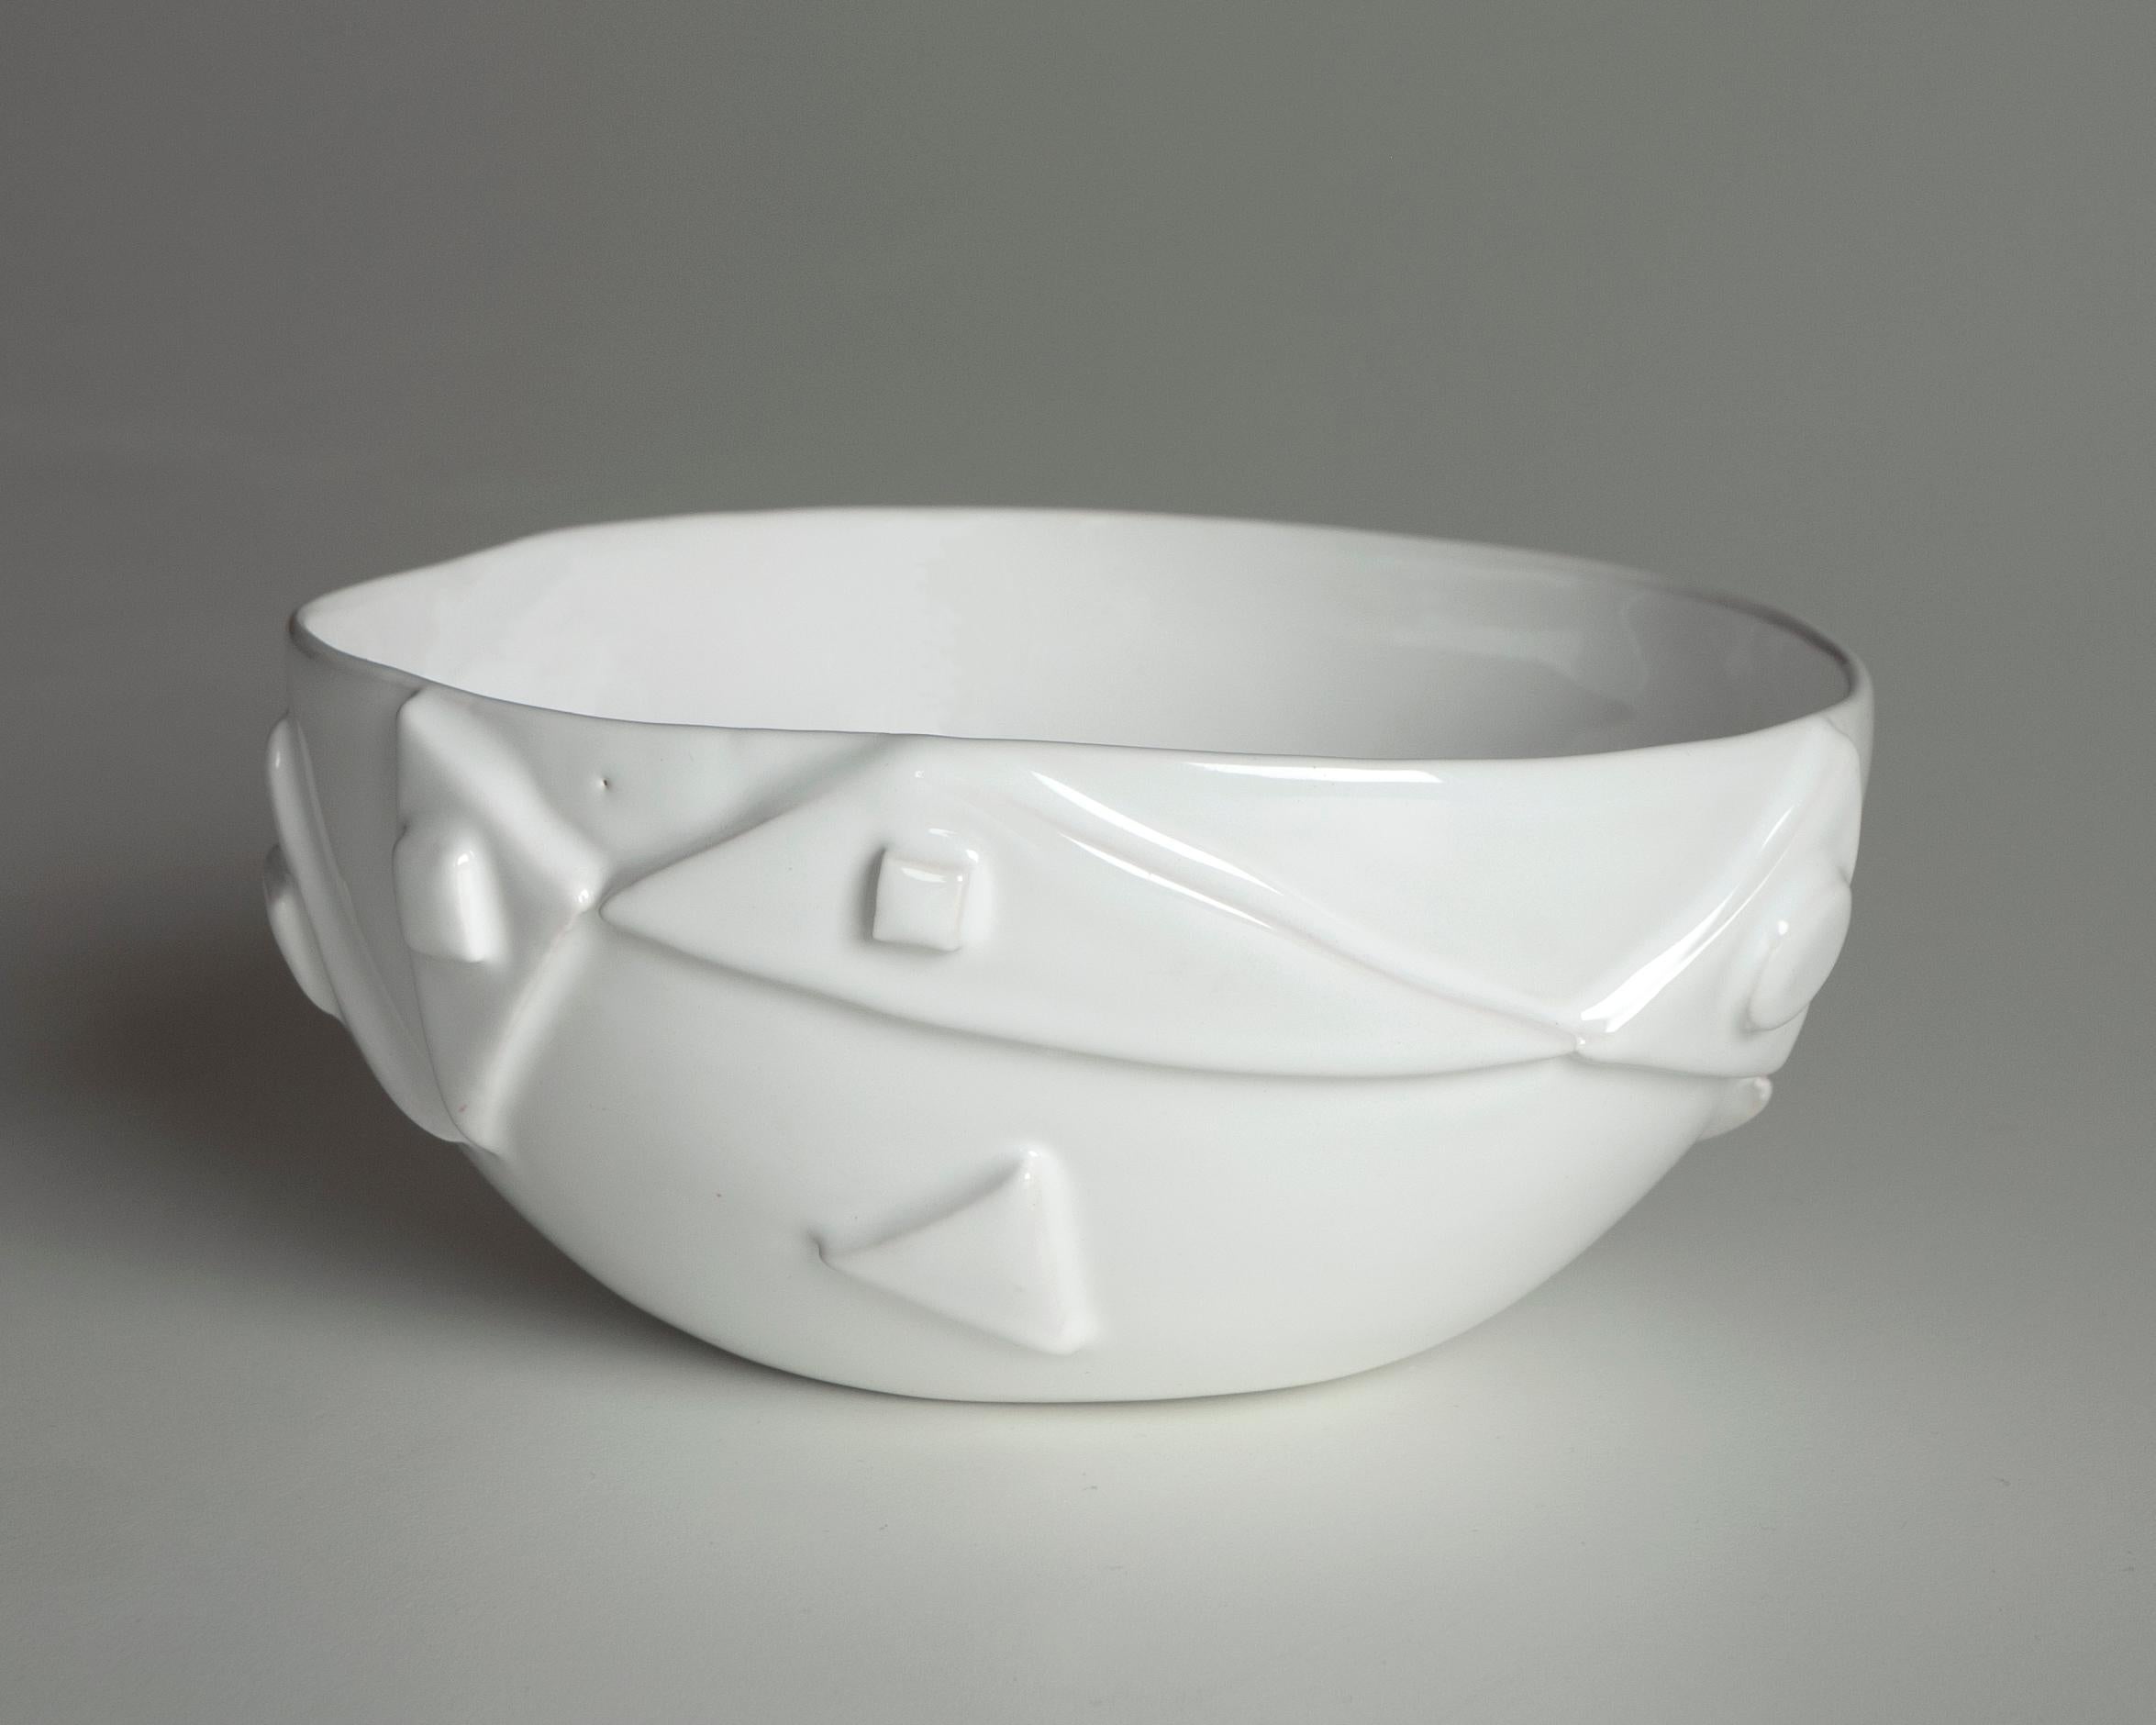 Le bol en céramique blanche est émaillé par immersion, ce qui met en valeur le décor en relief et ses irrégularités, le rendant unique.